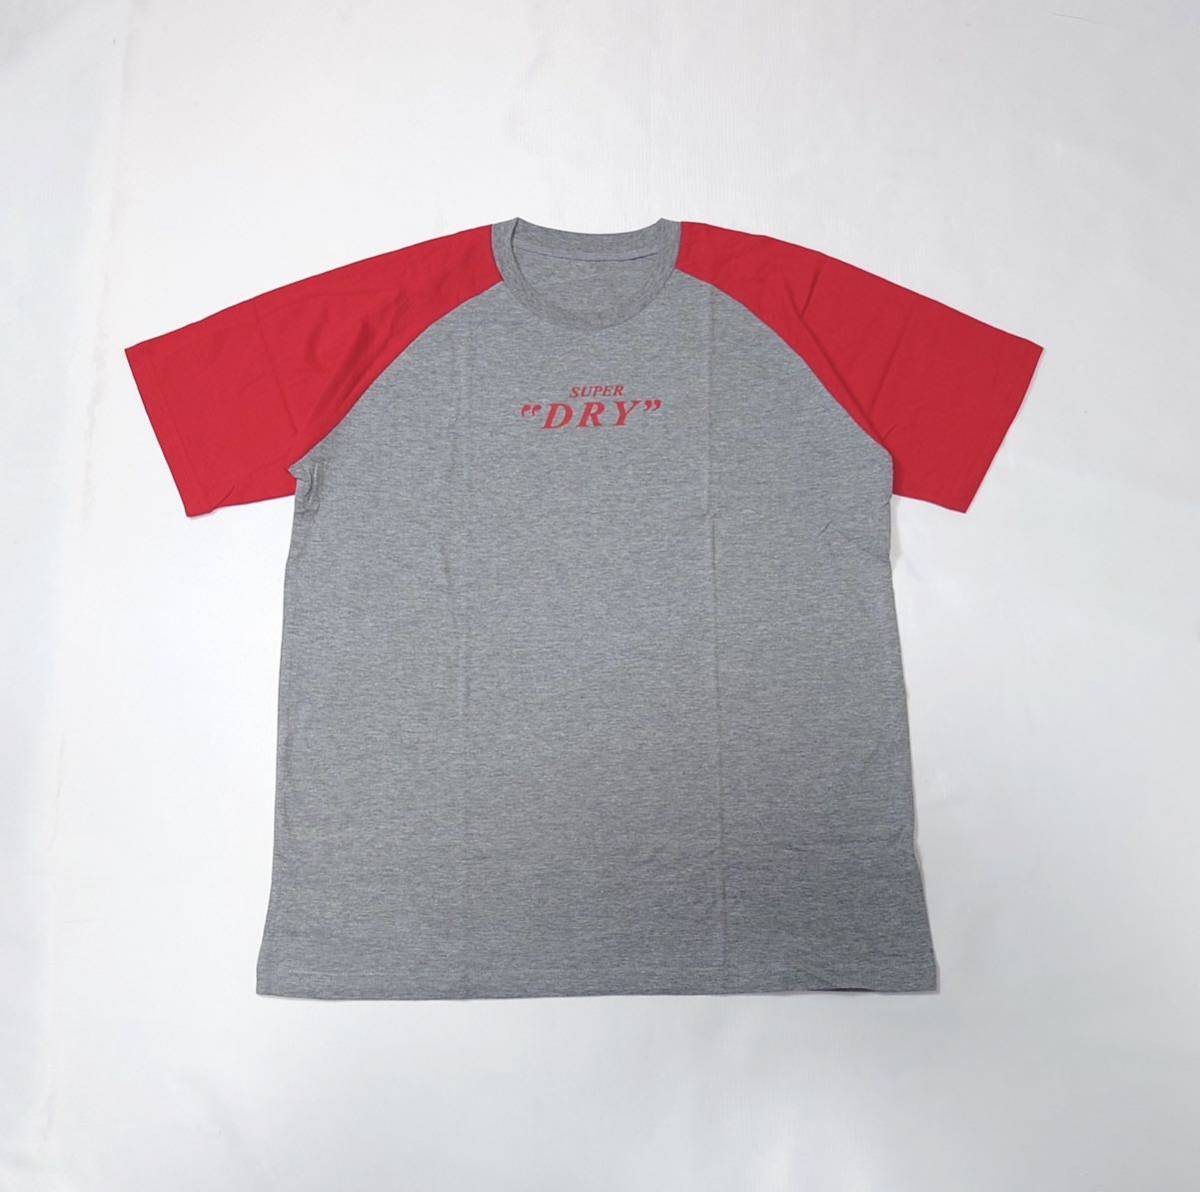 (未使用) SUPER DRY スーパードライ // アサヒ / 半袖 ロゴプリント Tシャツ カットソー (グレー系×赤・切替) サイズ L_画像2